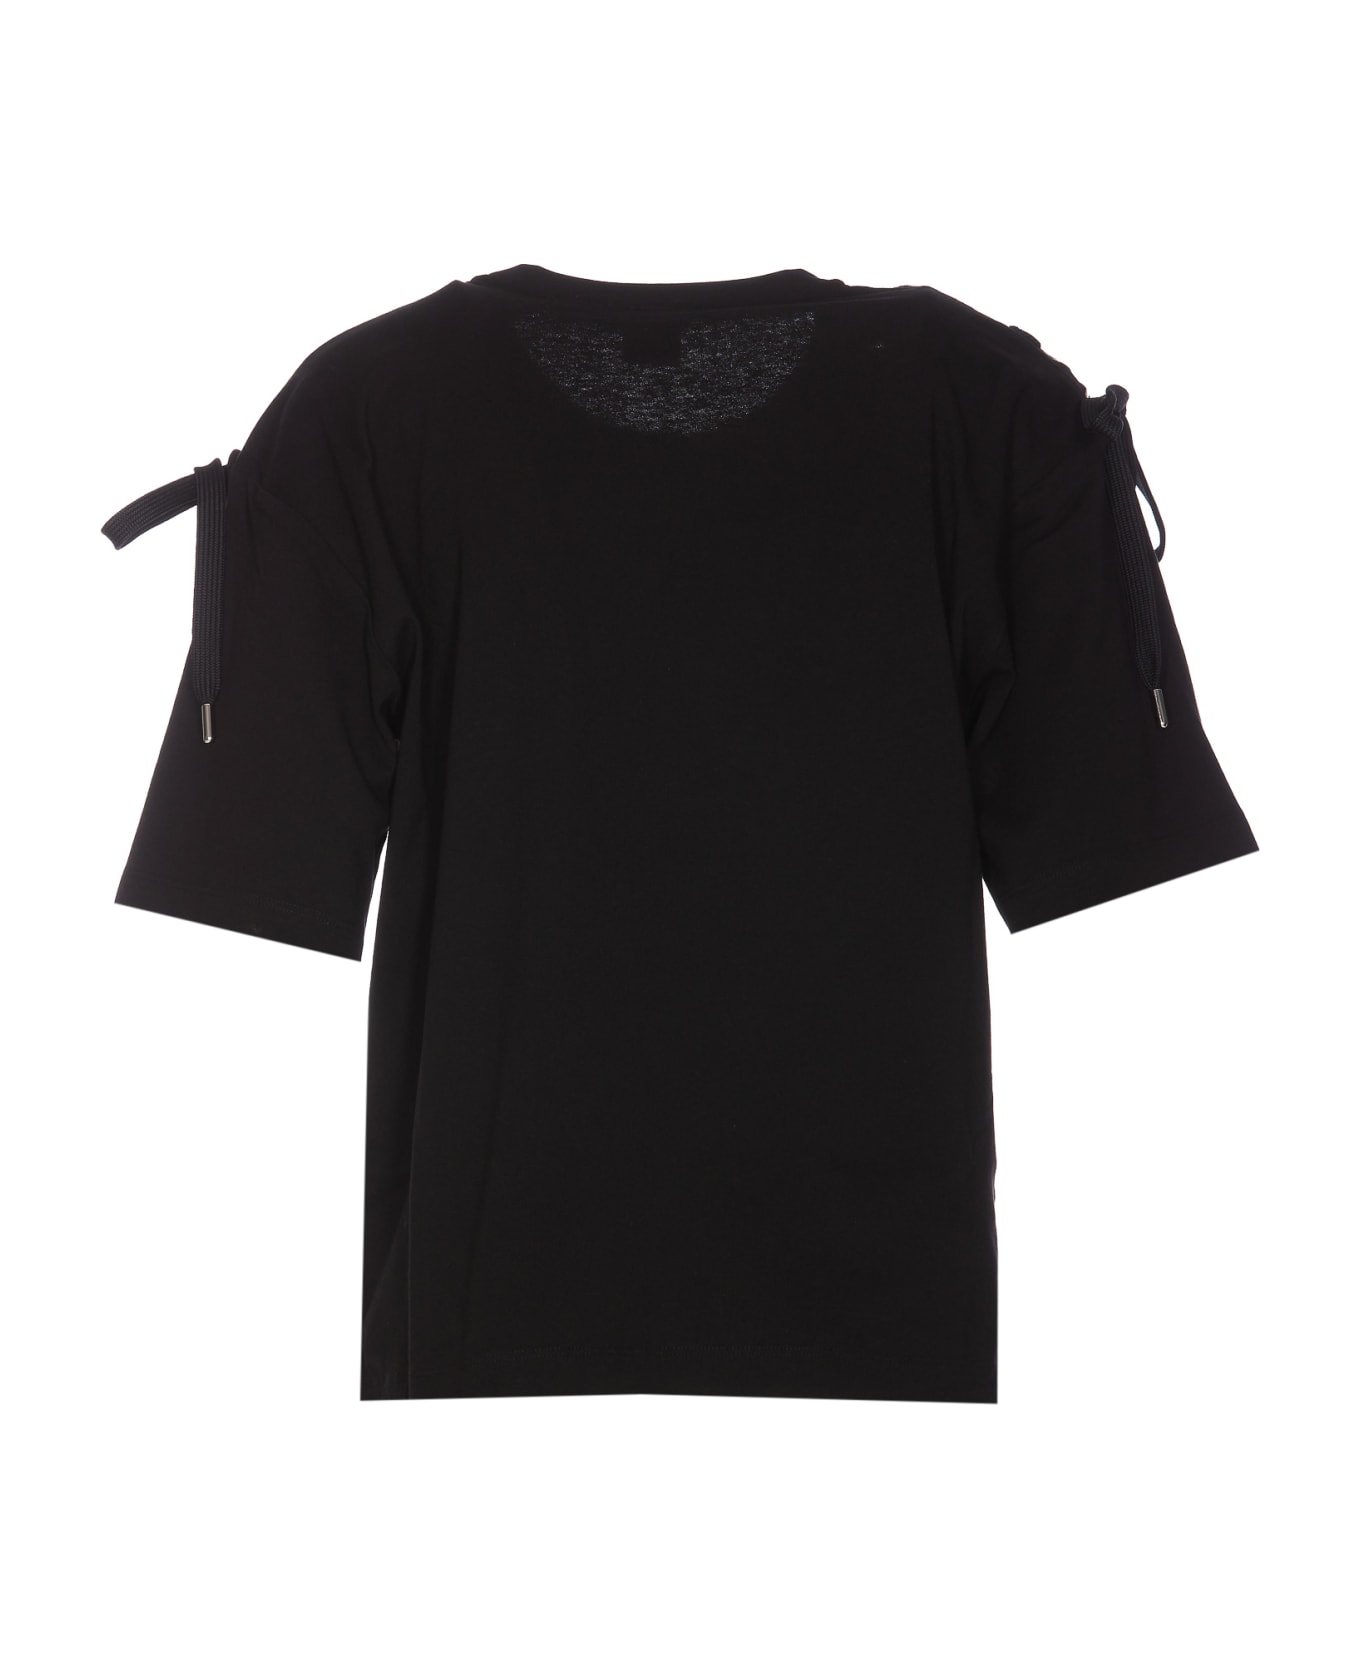 Pinko Maverick T-shirt - Black